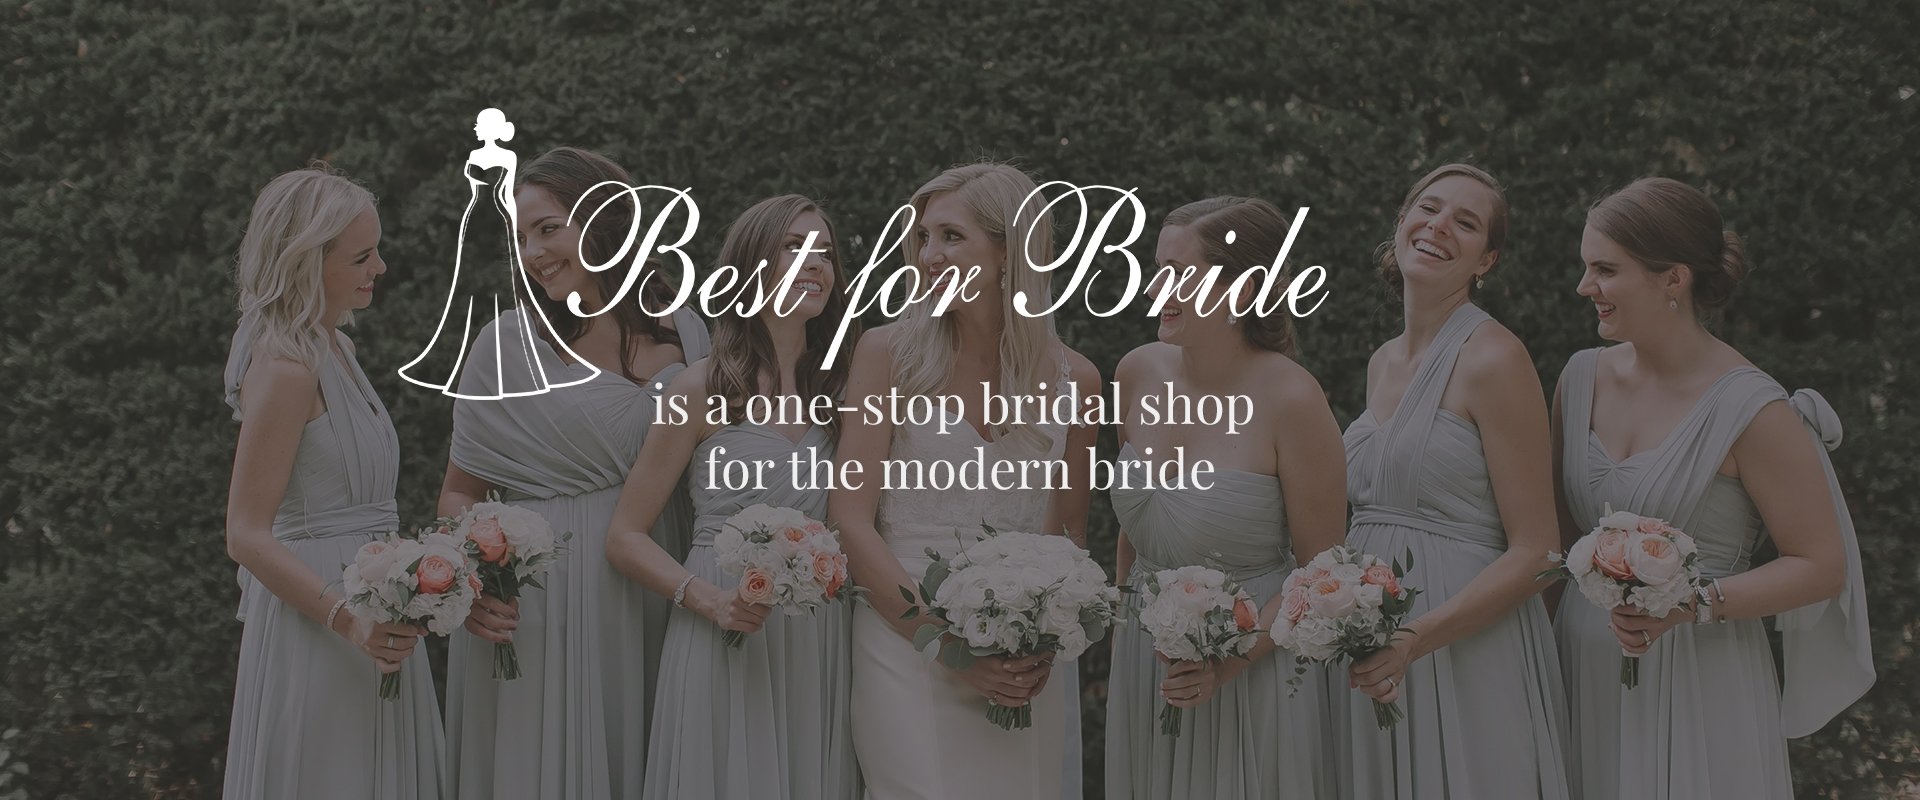 simple wedding dresses for bride detachable skirt white elegant cheap –  inspirationalbridal